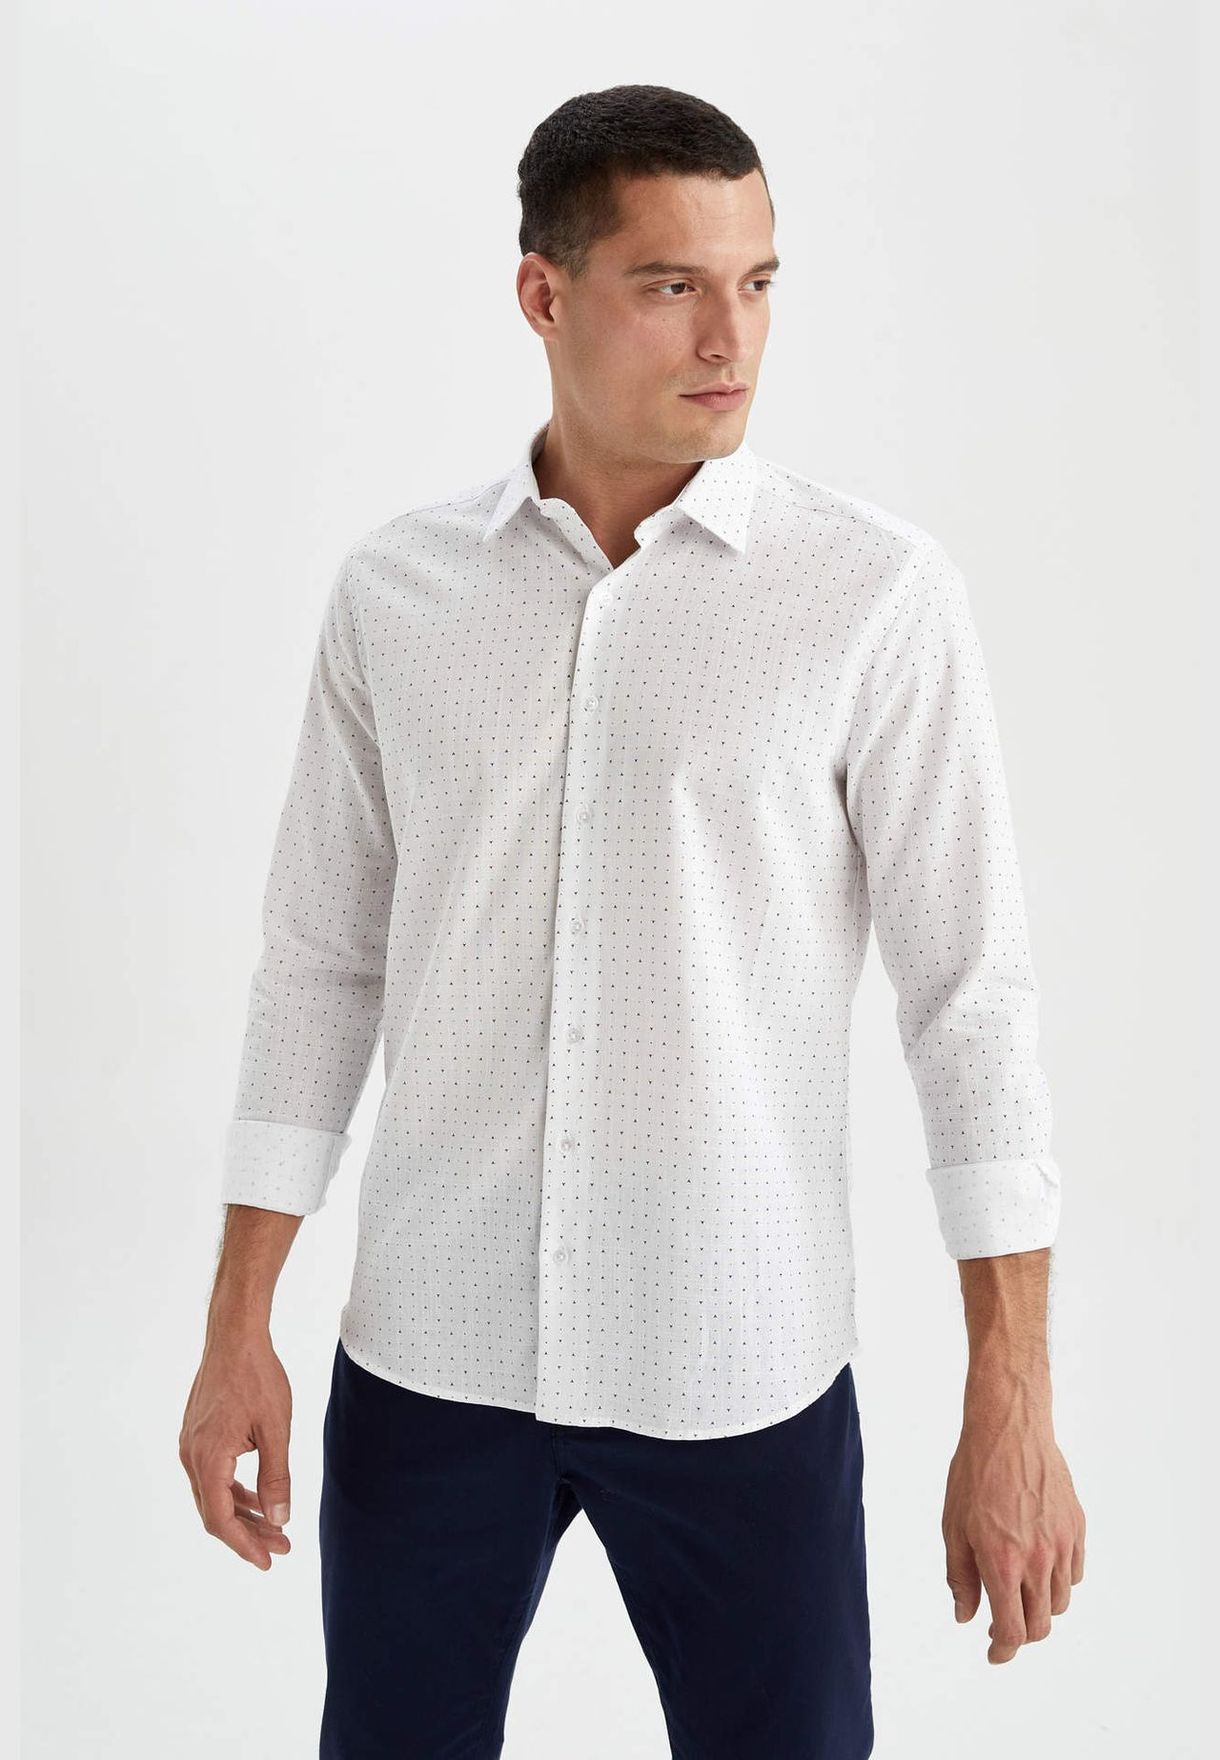 Man Modern Fit italian Neck Woven Top Long Sleeve Shirt